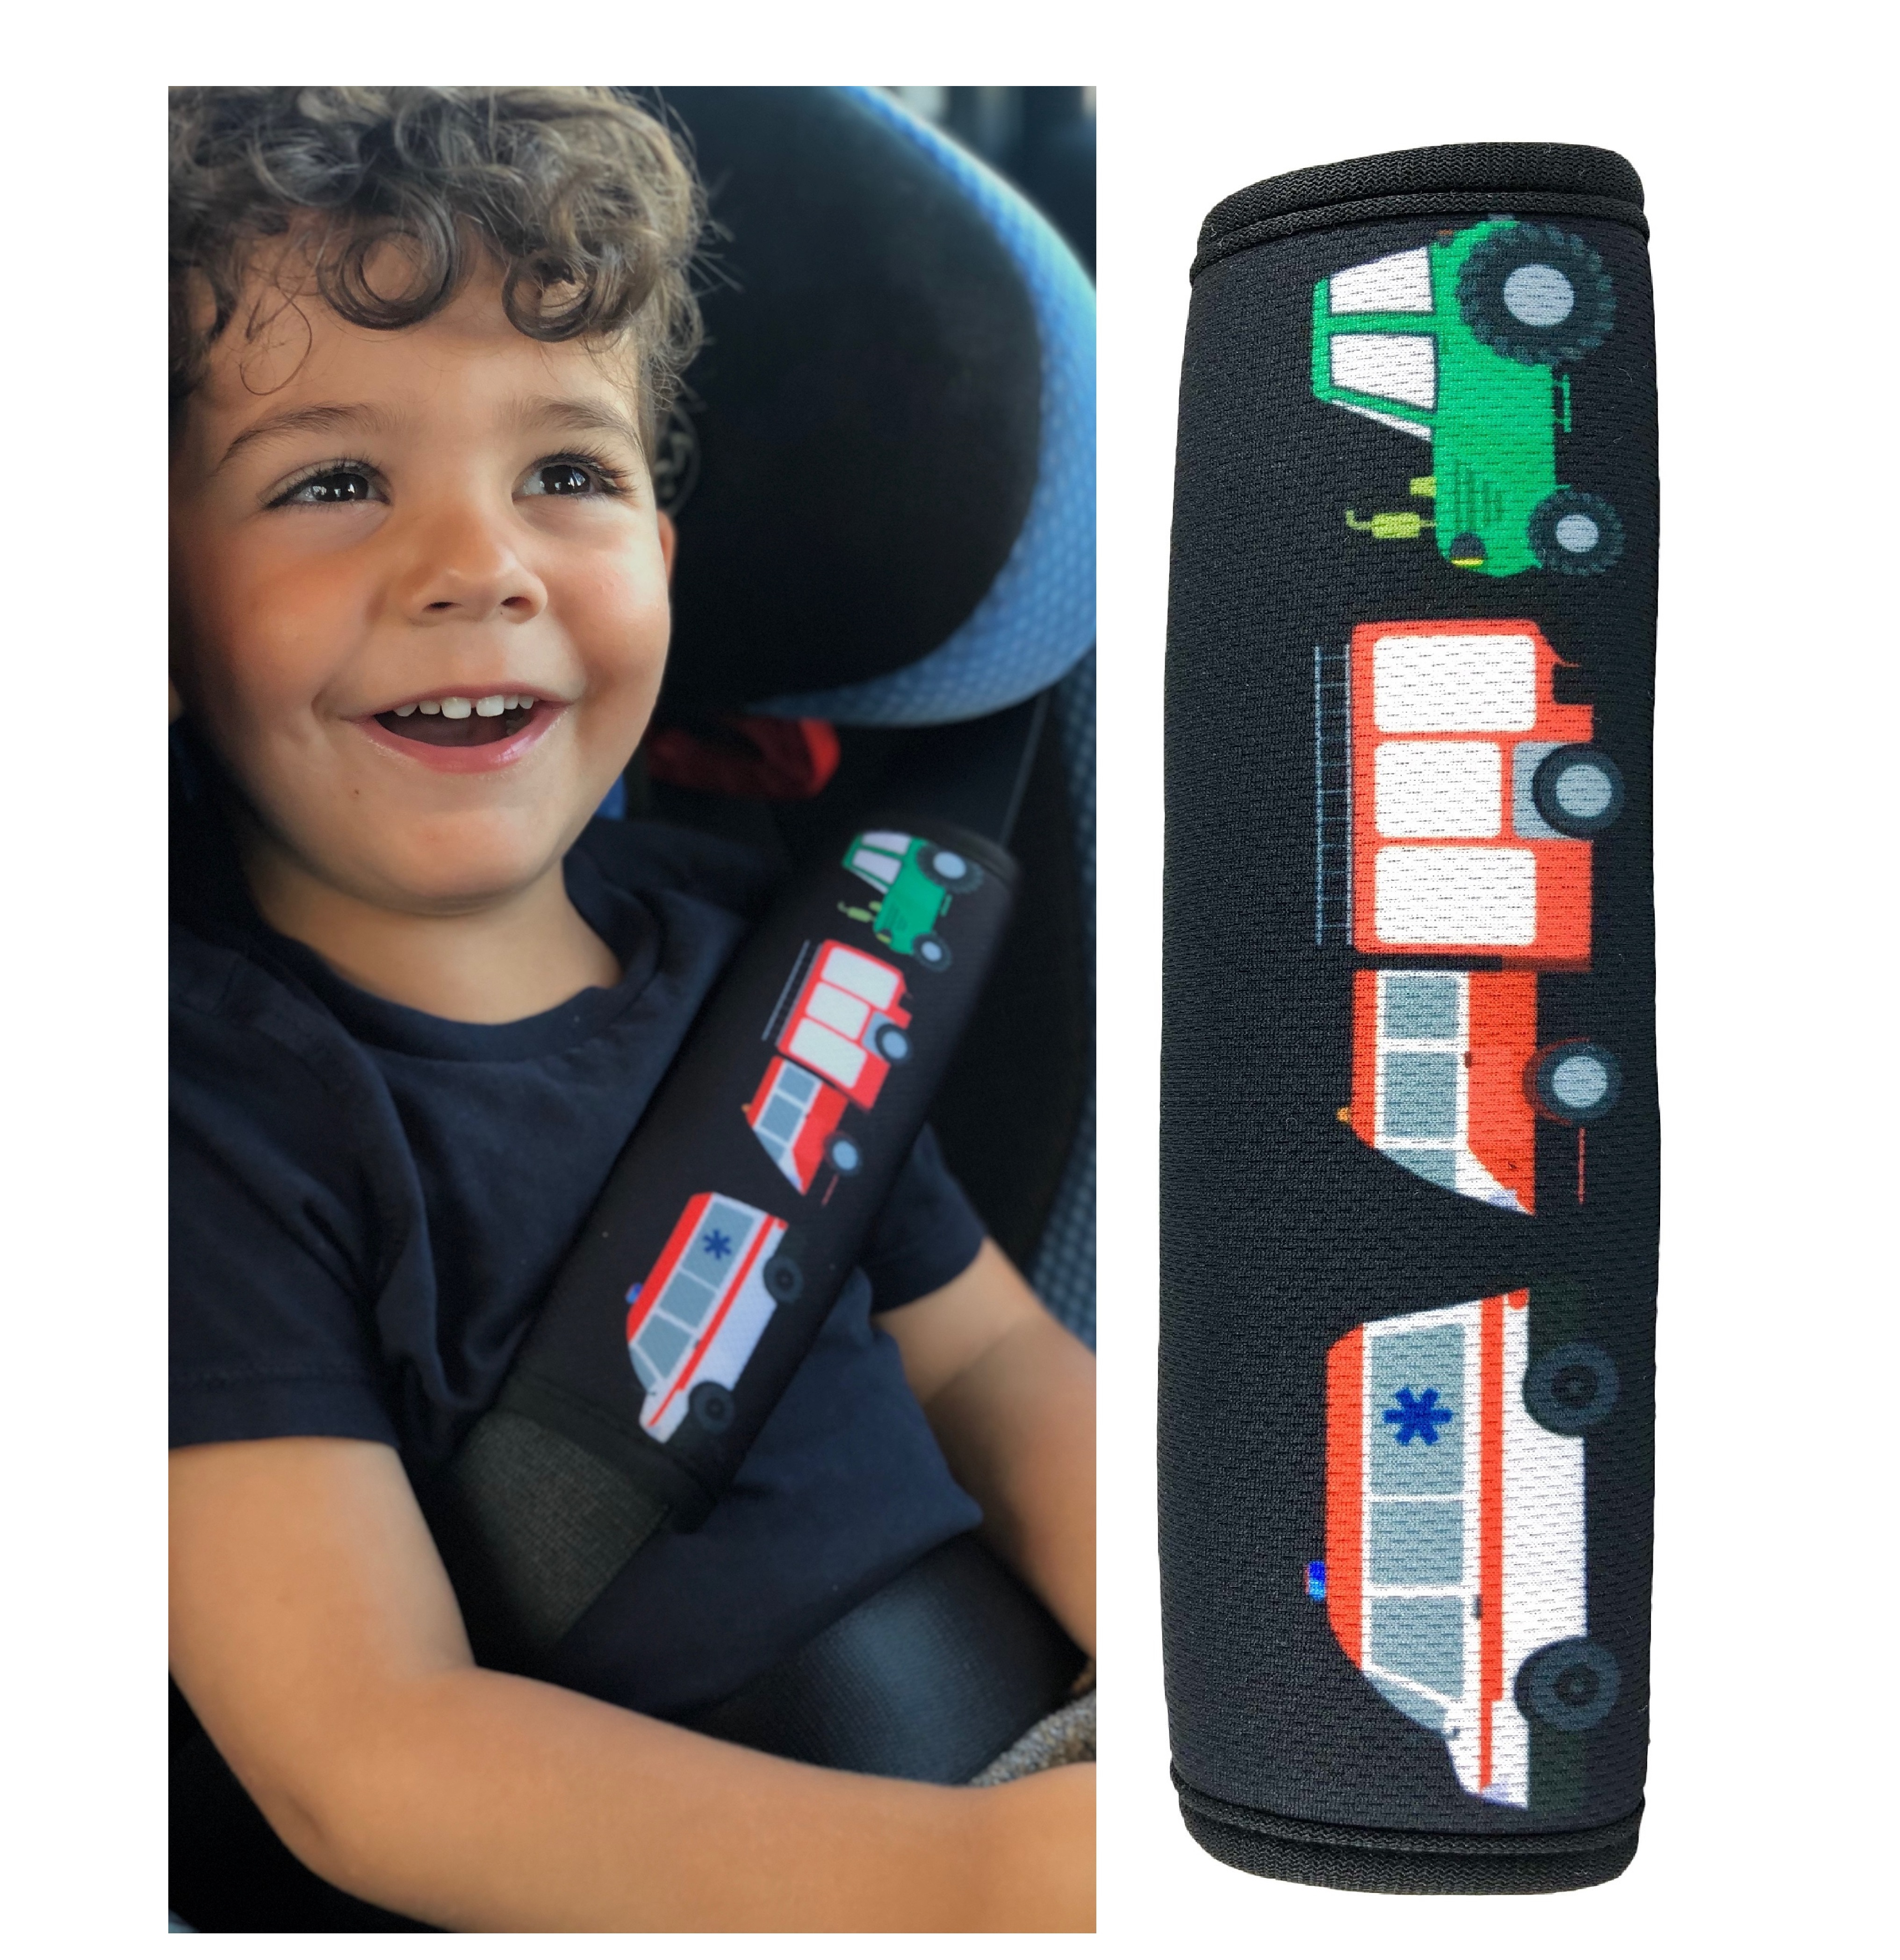 Gurtpolster Gurtschoner Kinder Auto Zubehör blau bunt Kindersitz Sicherheitsgurt 